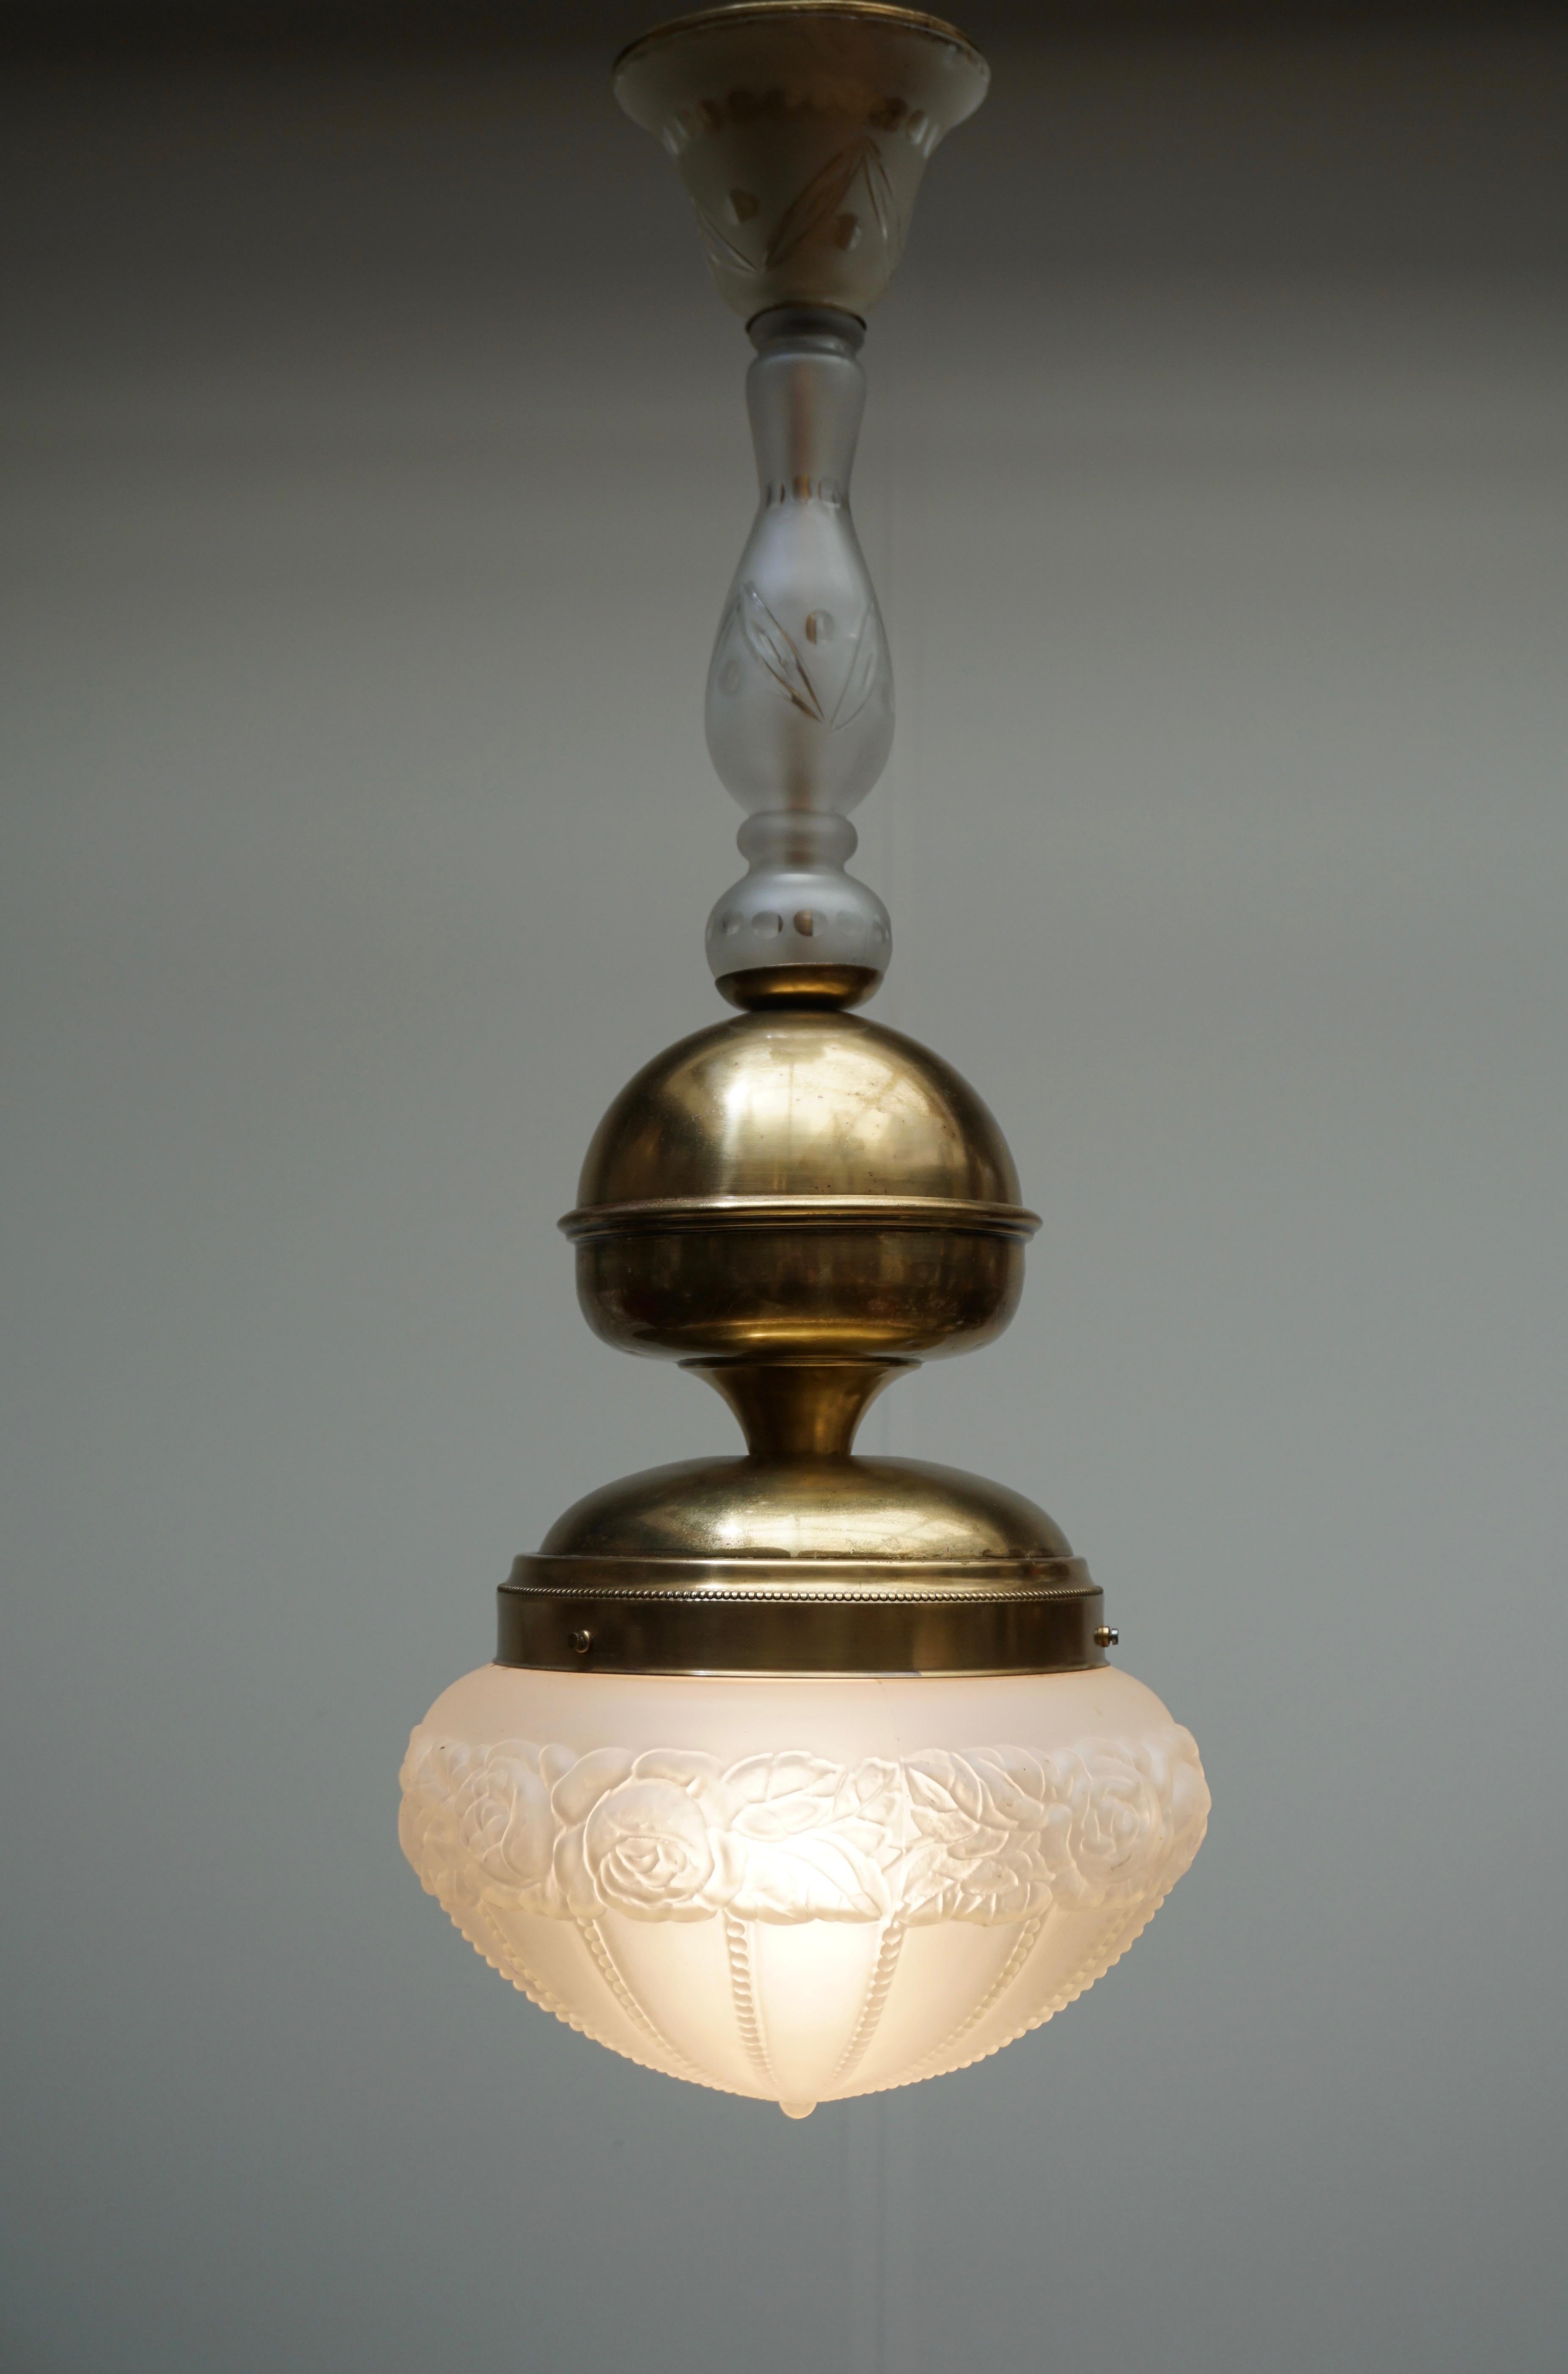 Lampe pendante italienne en verre de Murano et laiton.
Mesures : Diamètre 28 cm.
Hauteur 70 cm.